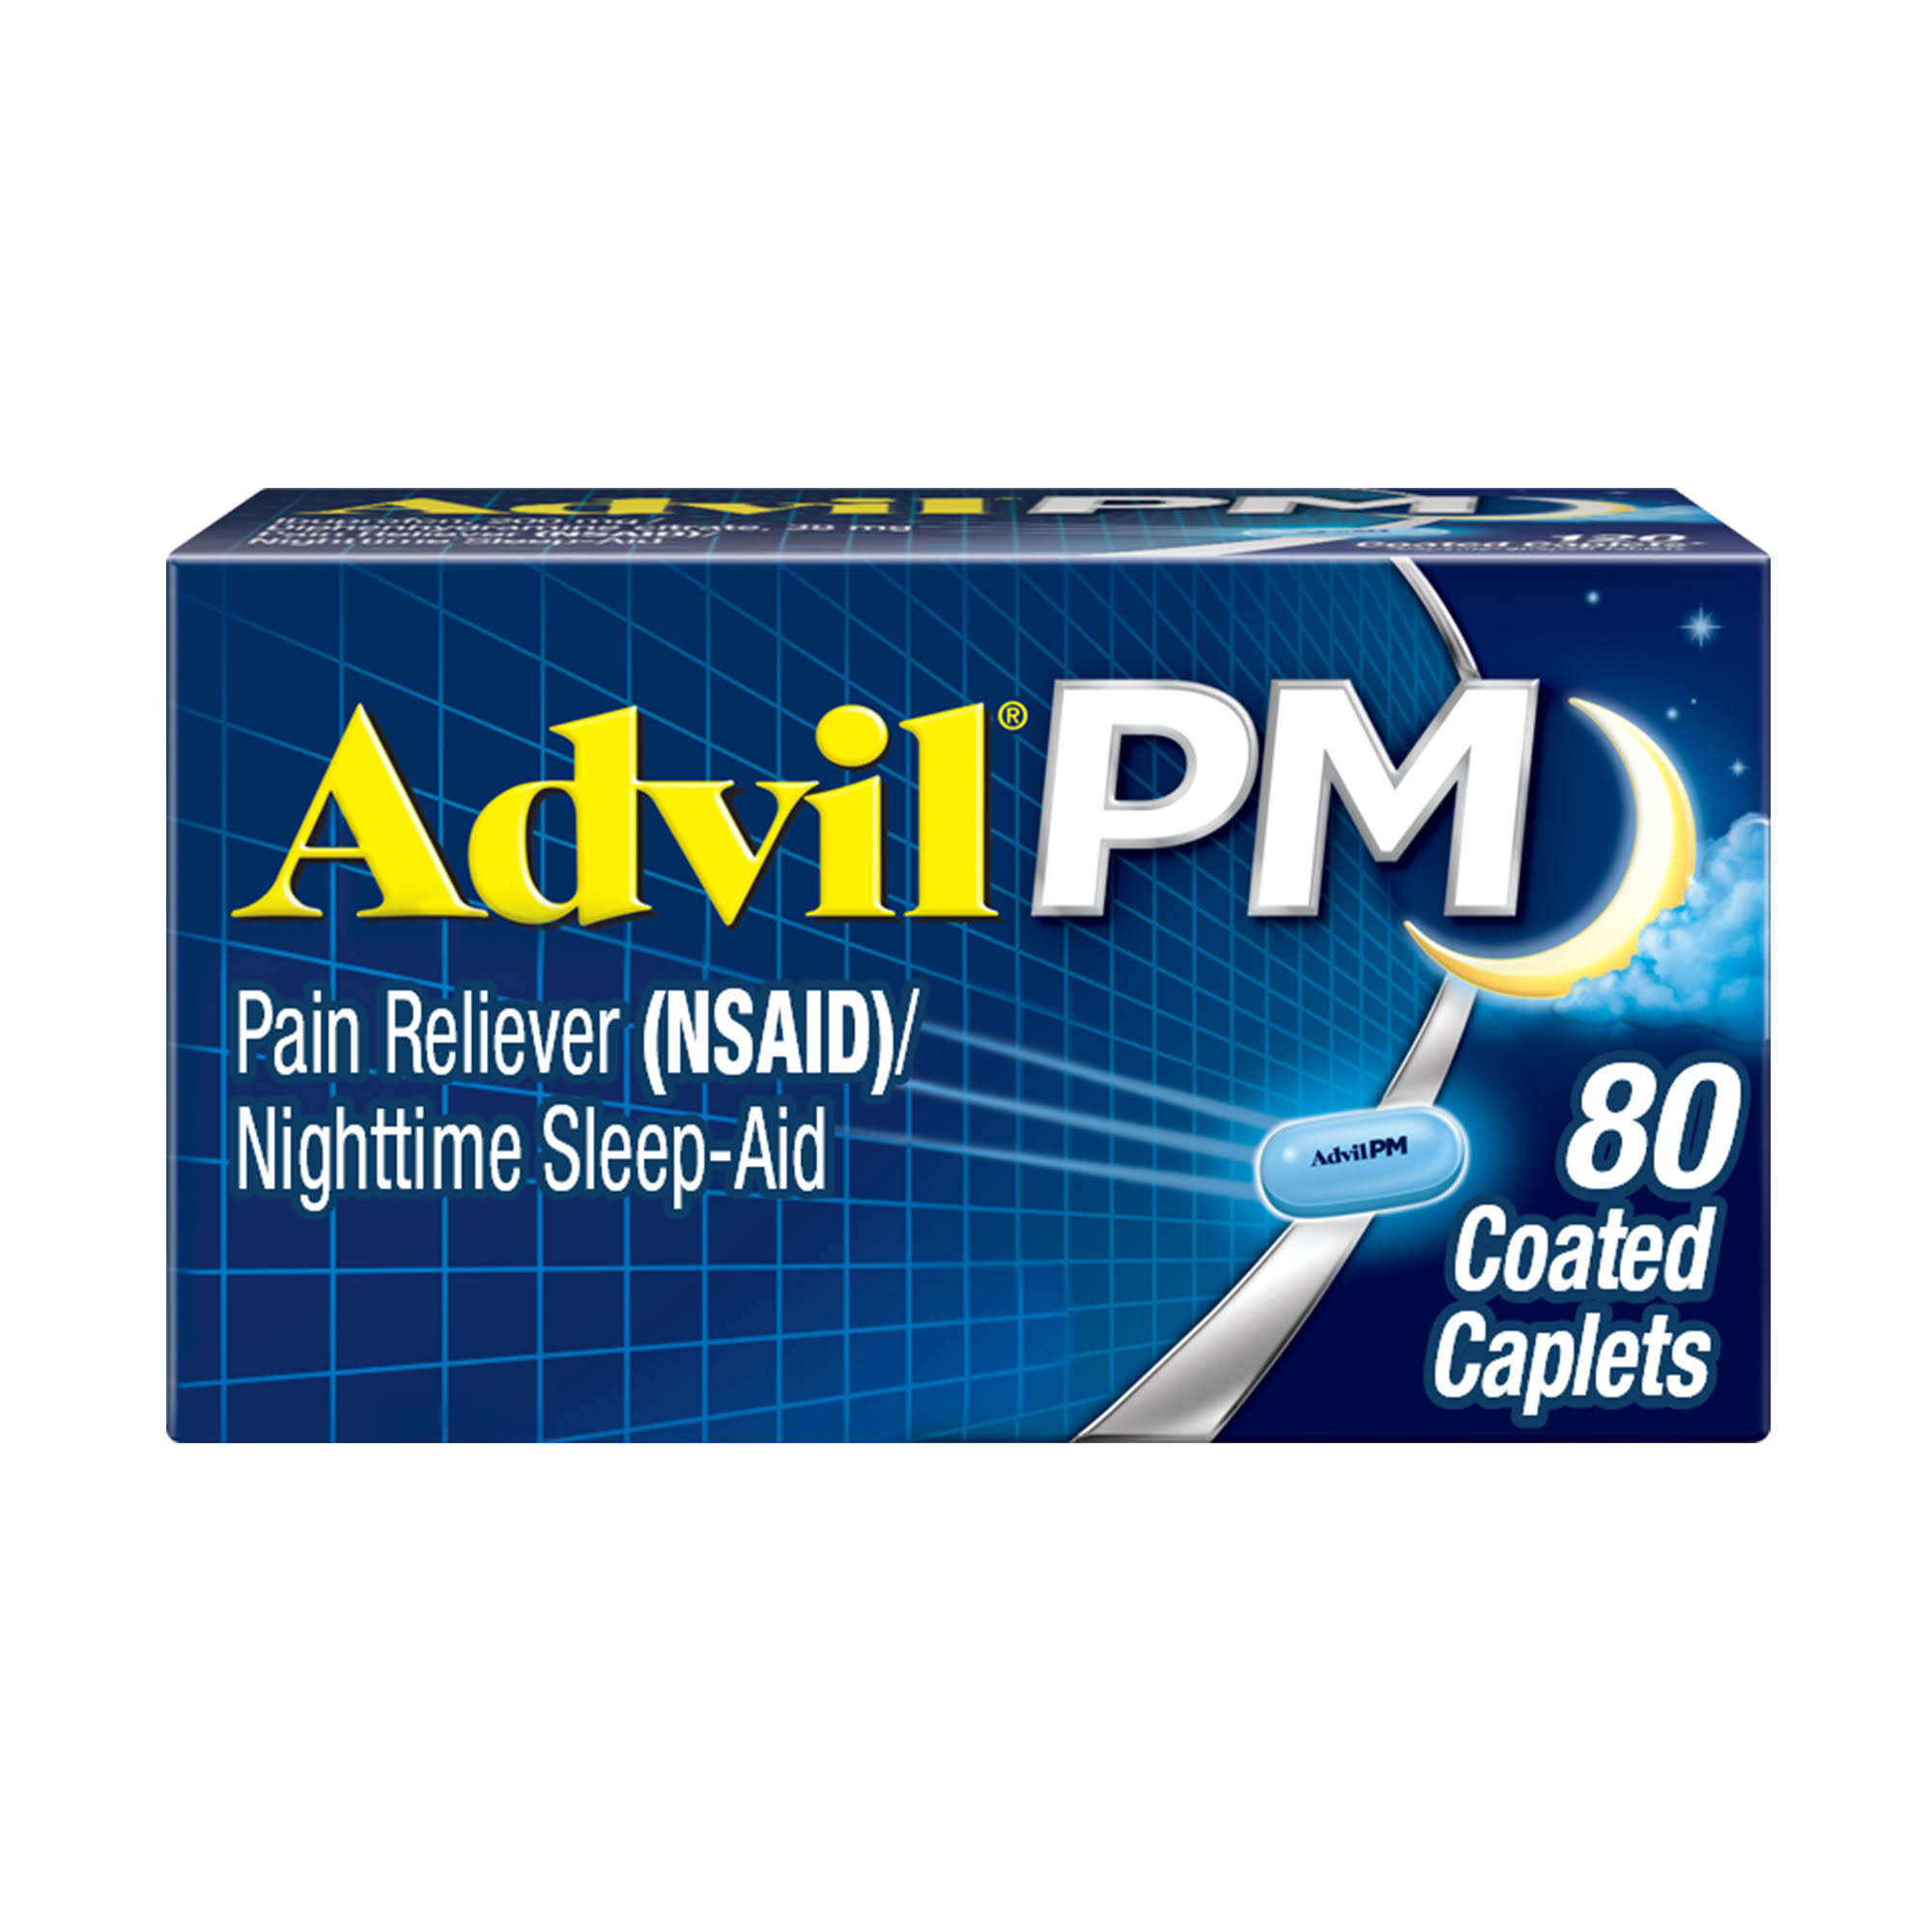 Advil PM Ibuprofen - 80 Coated Caplets